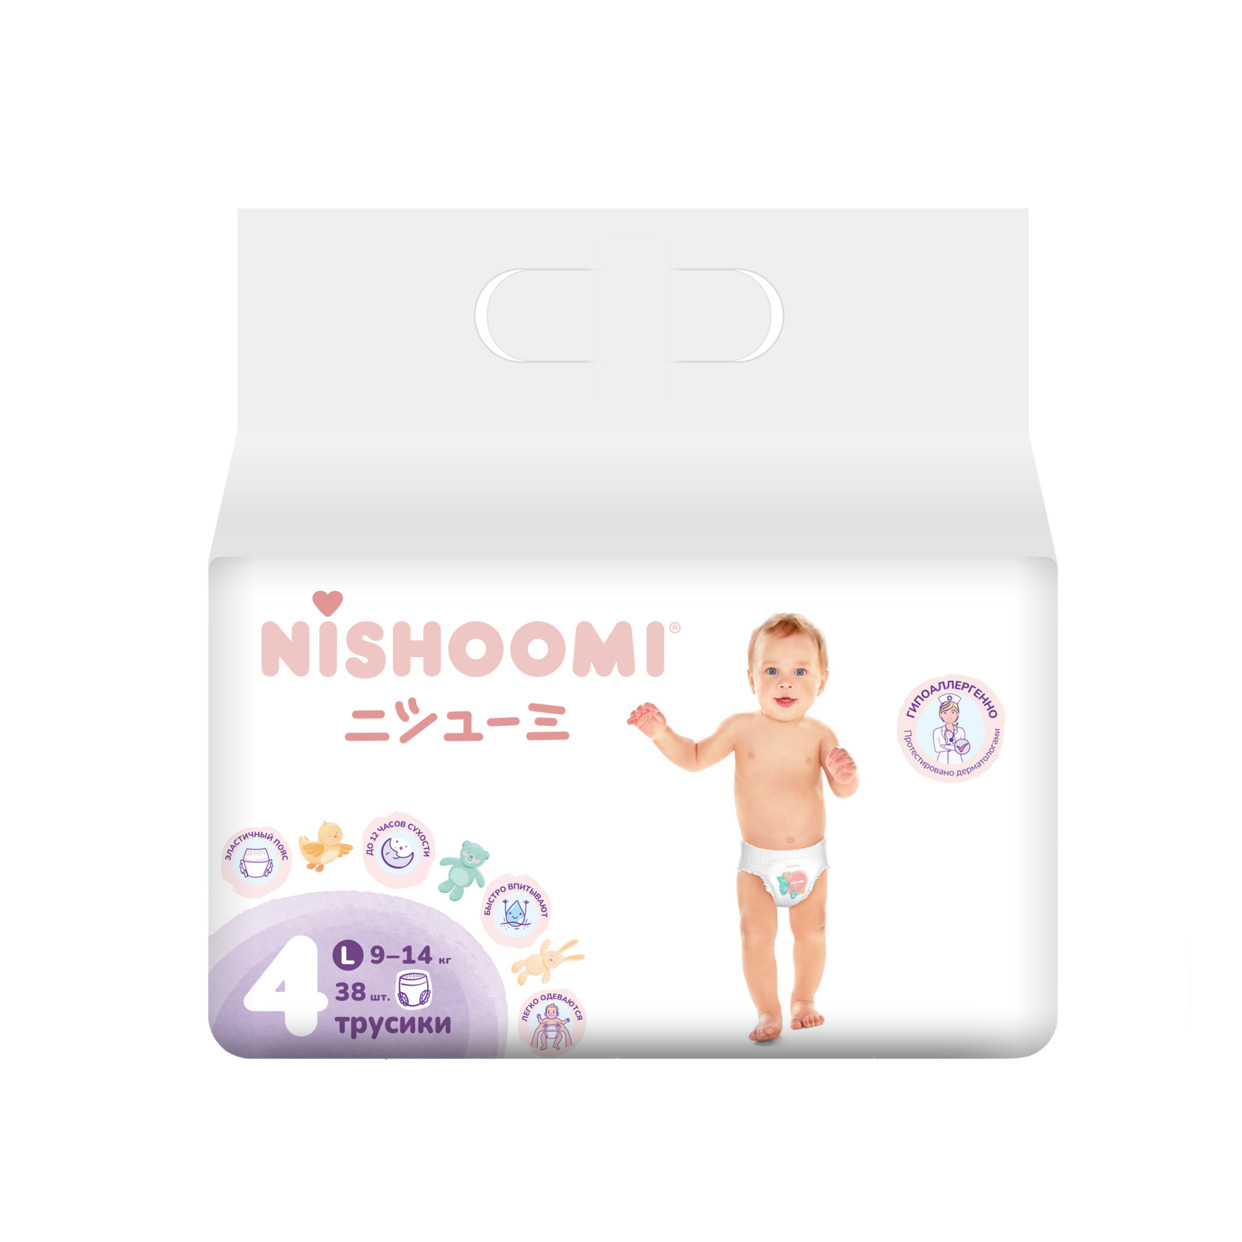 Изделия санитарно-гигиенические для ухода за детьми Nishoomi подгузники-трусики детские одноразовые. Размер «Макси» (L (4)), для дет ей весом 9-14 кг, 38 штук в уп.